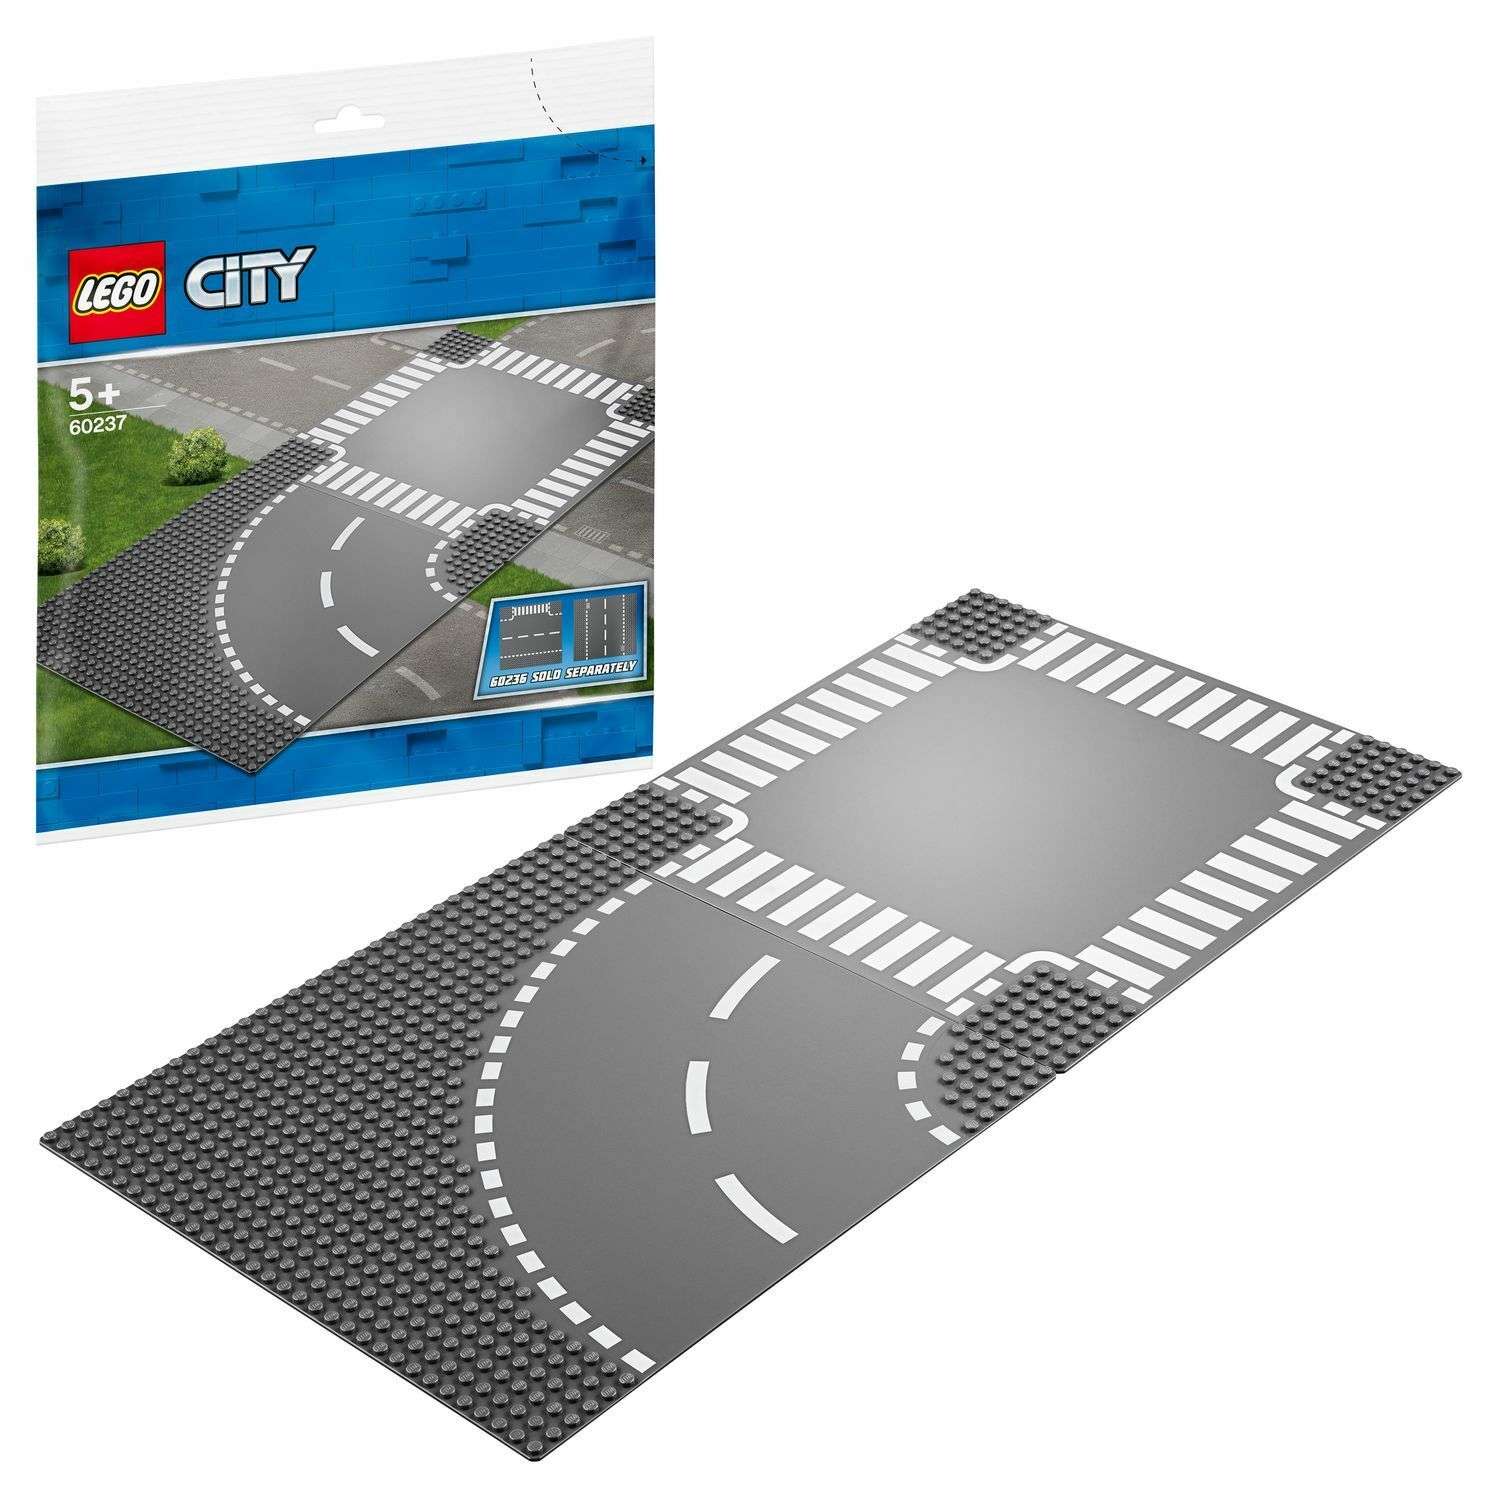 Конструктор LEGO City Supplementary Поворот и перекресток 60237 - фото 1